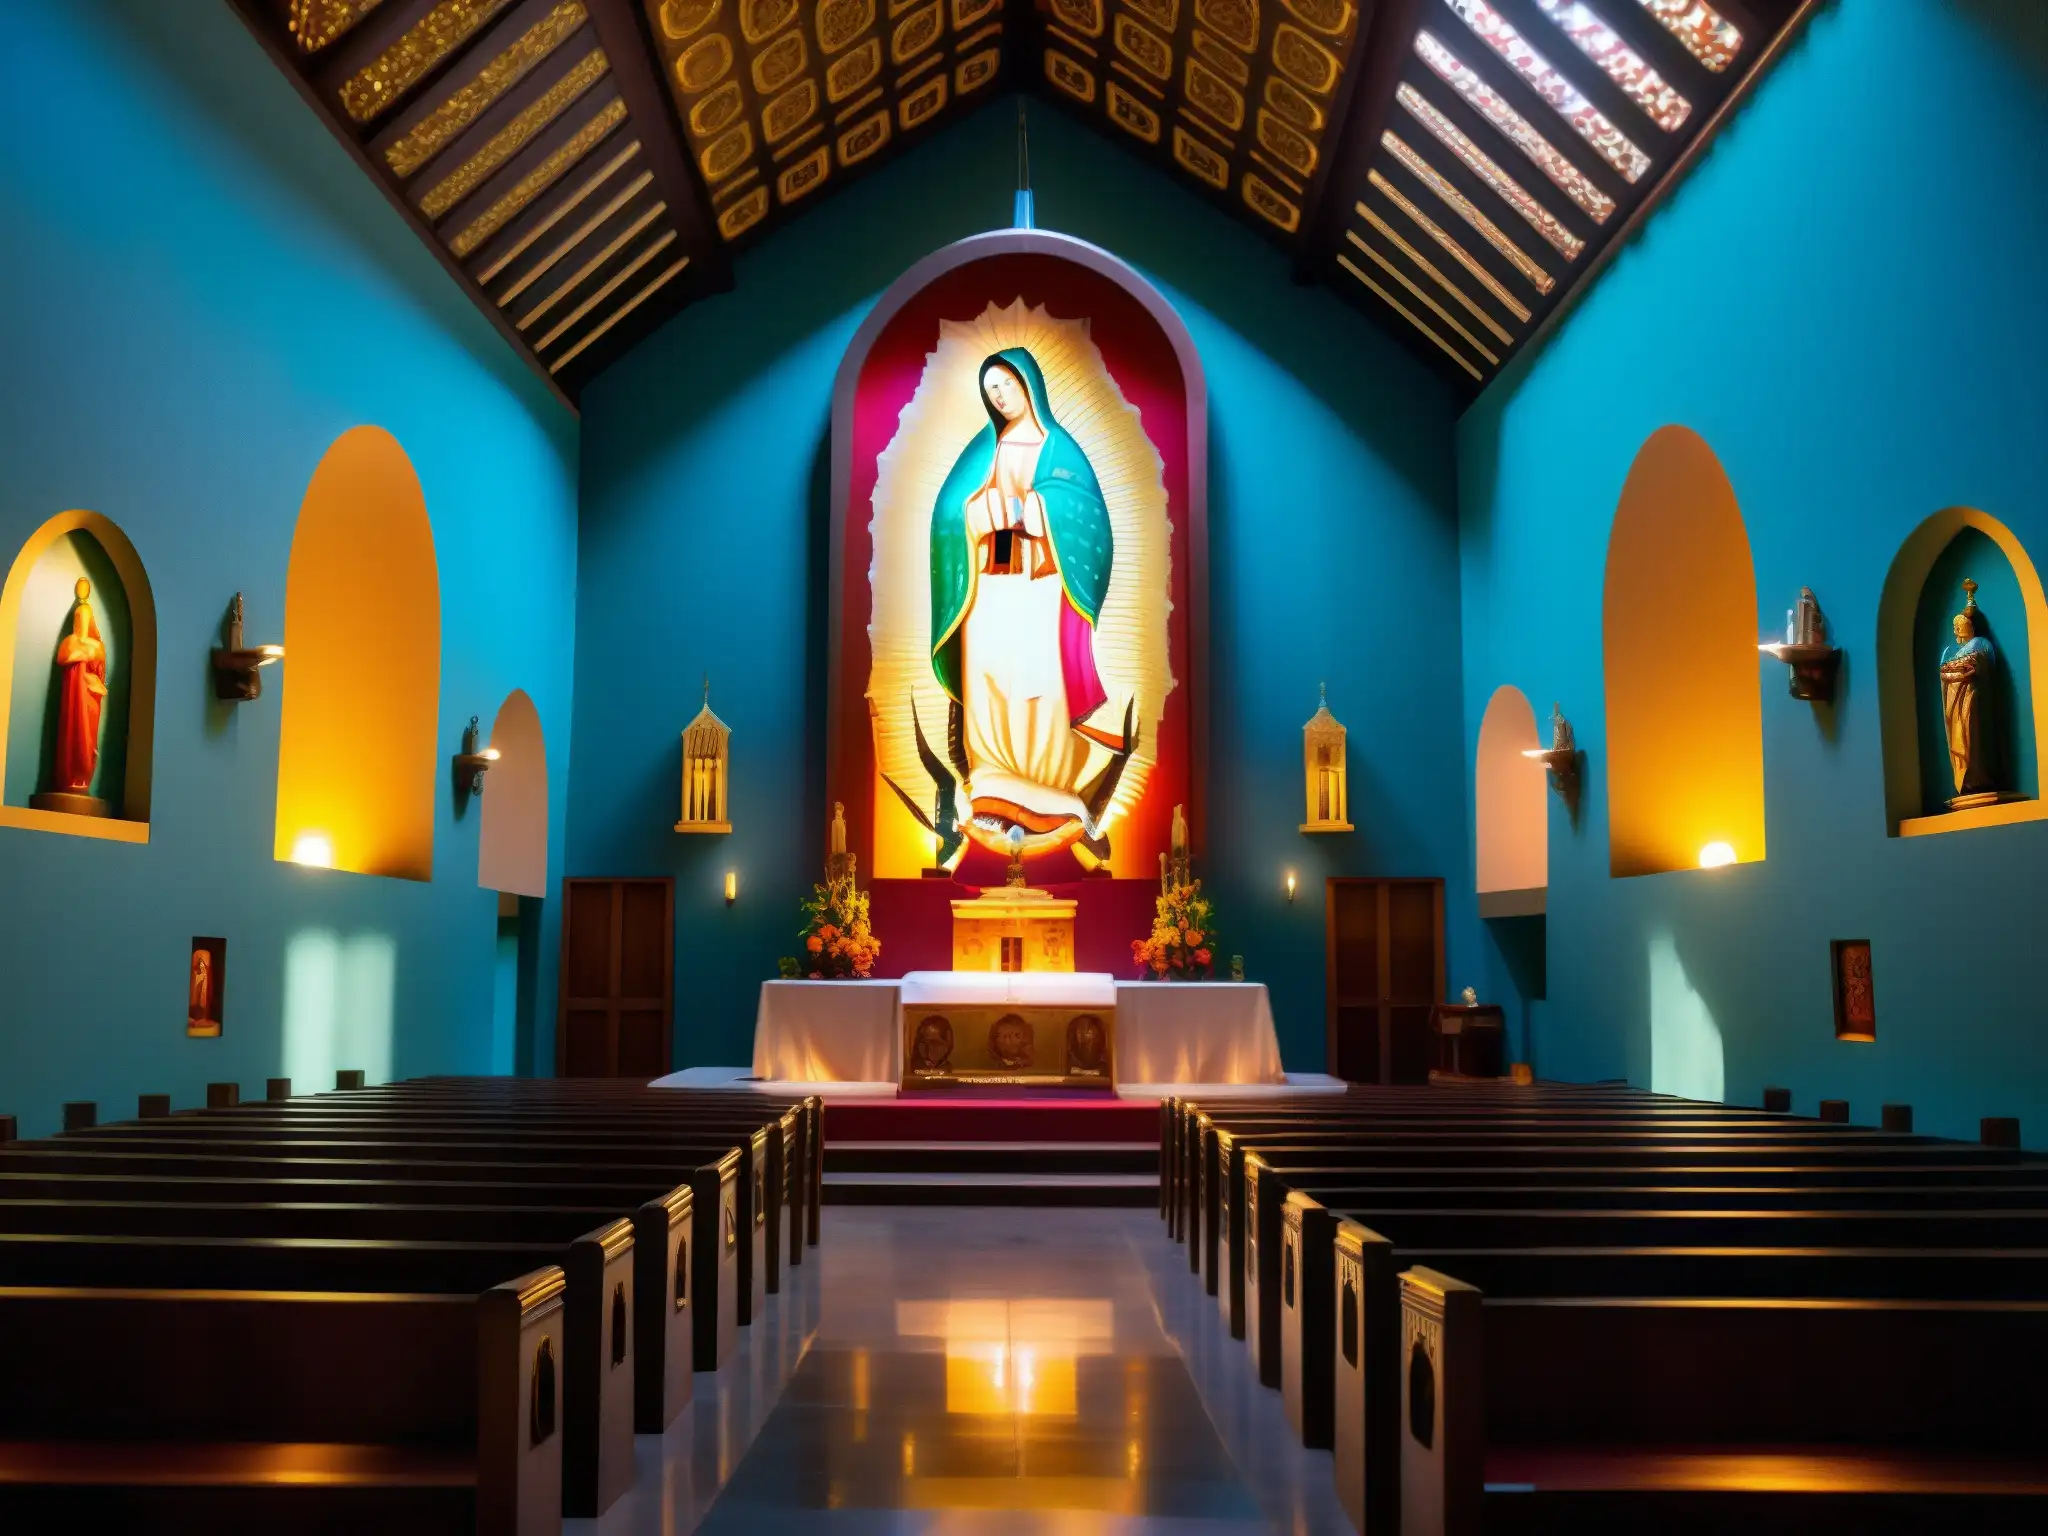 Vibrante iconografía religiosa iluminada en la Basílica de Guadalupe, con atmósfera de misterio y espiritualidad